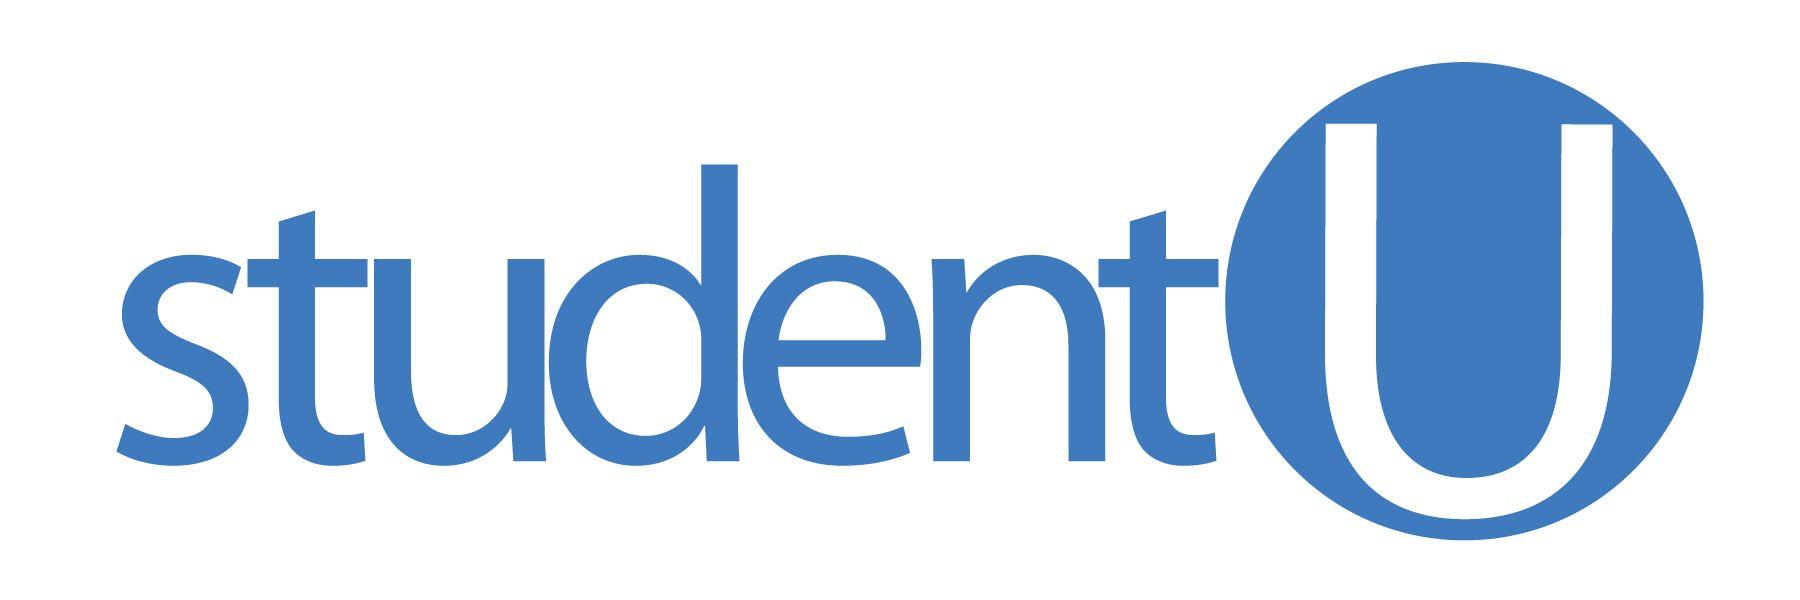 Student U Logo - Student U